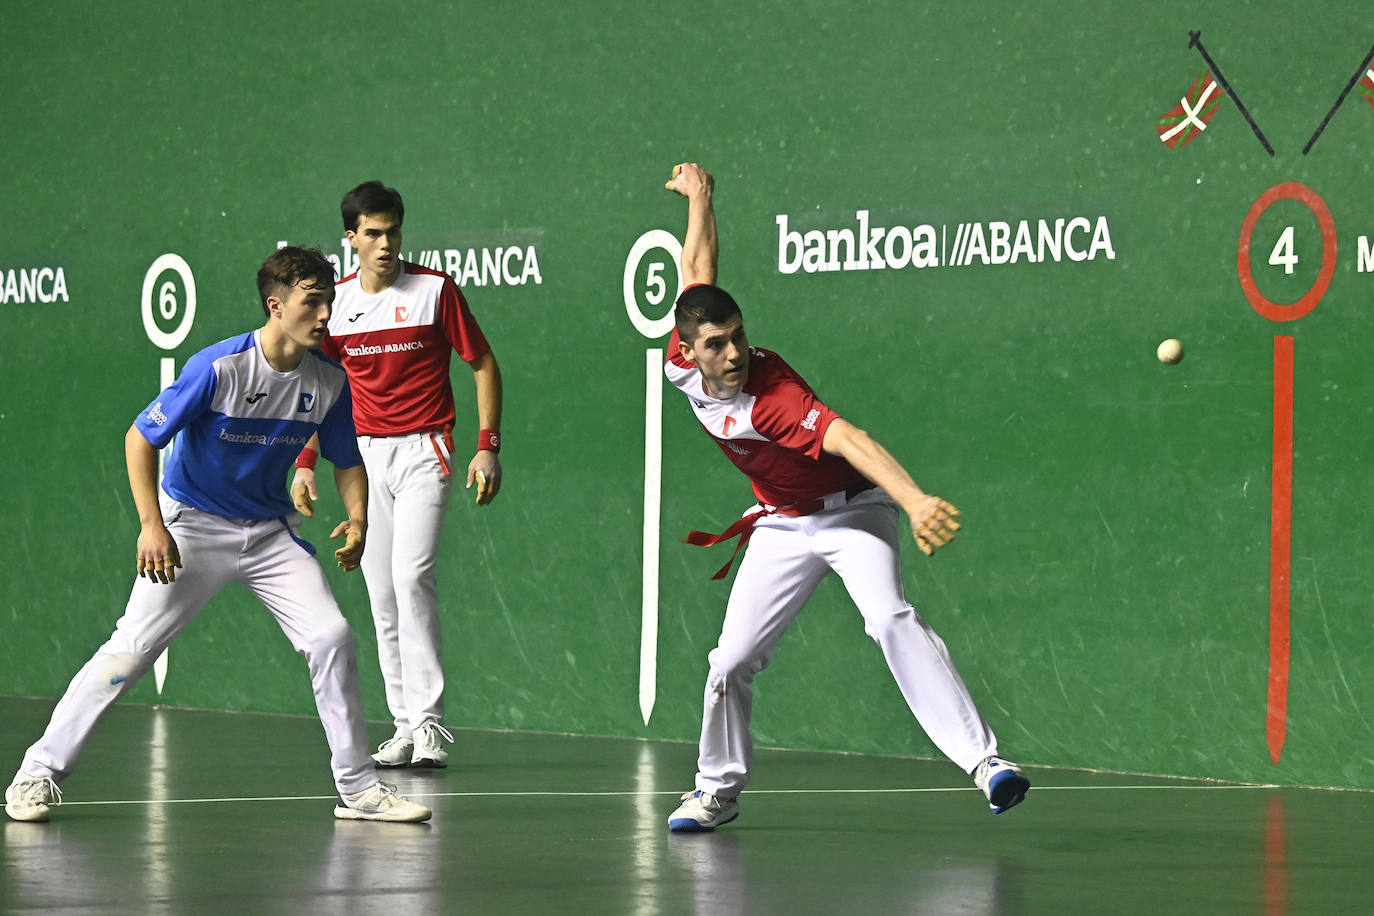 Igoa y Ugartemendia avanzan a la final sénior del Torneo Bankoa ABANCA-DV después de derrotar 22-13 a Fernández y Ekain Lizeaga en semifinales.